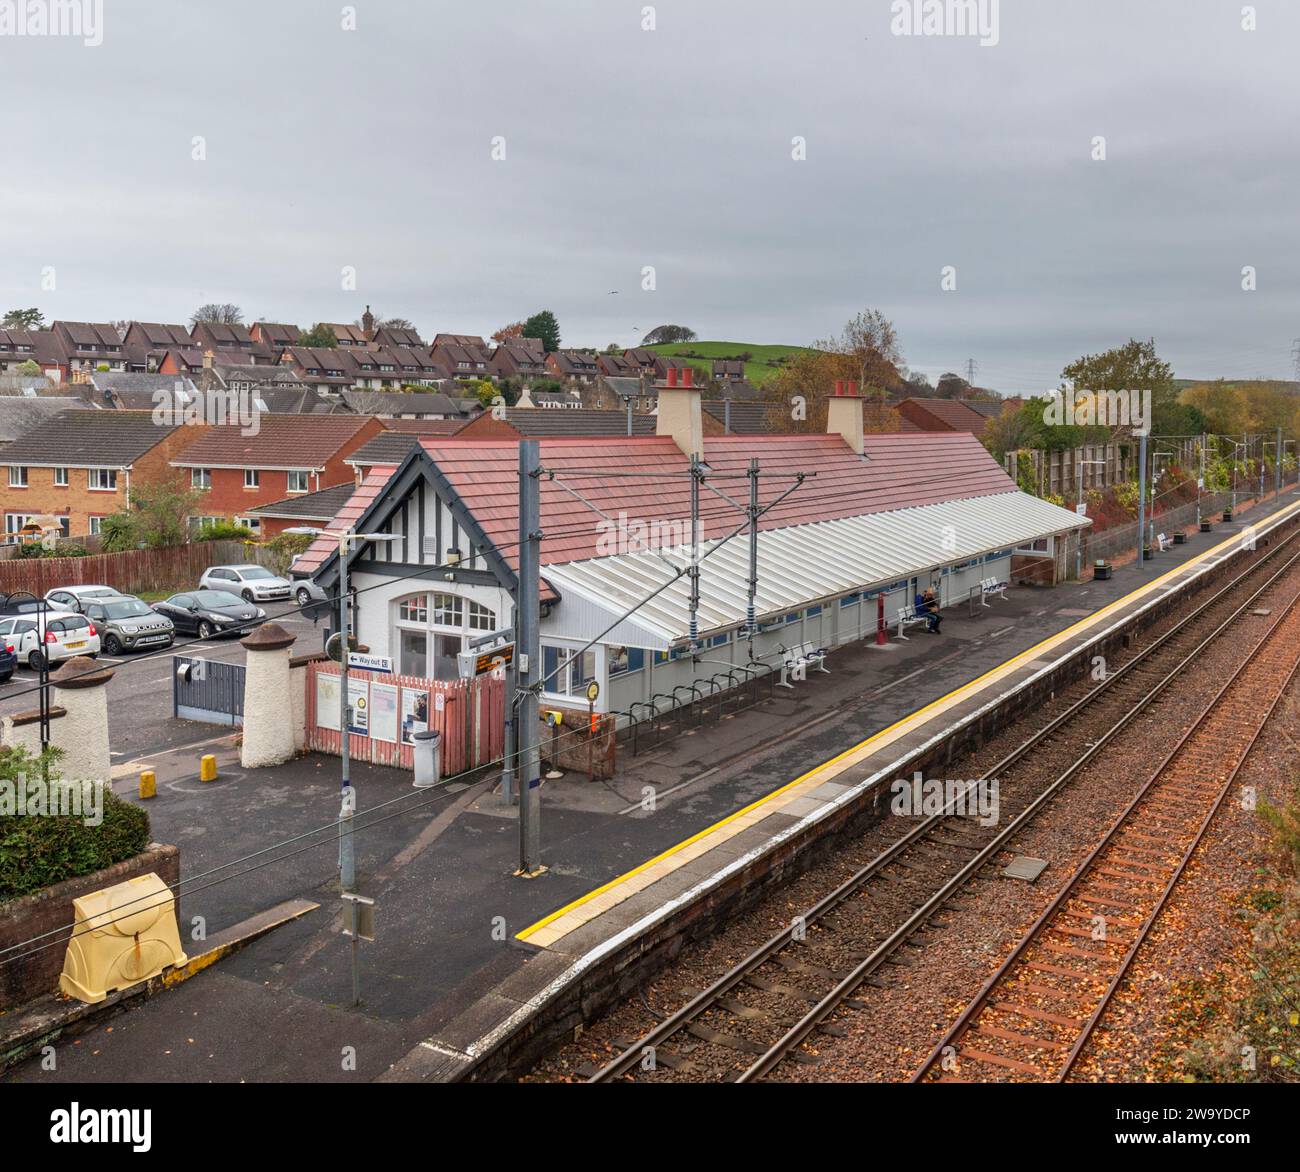 West Kilbride railway station, Ayrshire, Scotland, UK without passengers or any people Stock Photo